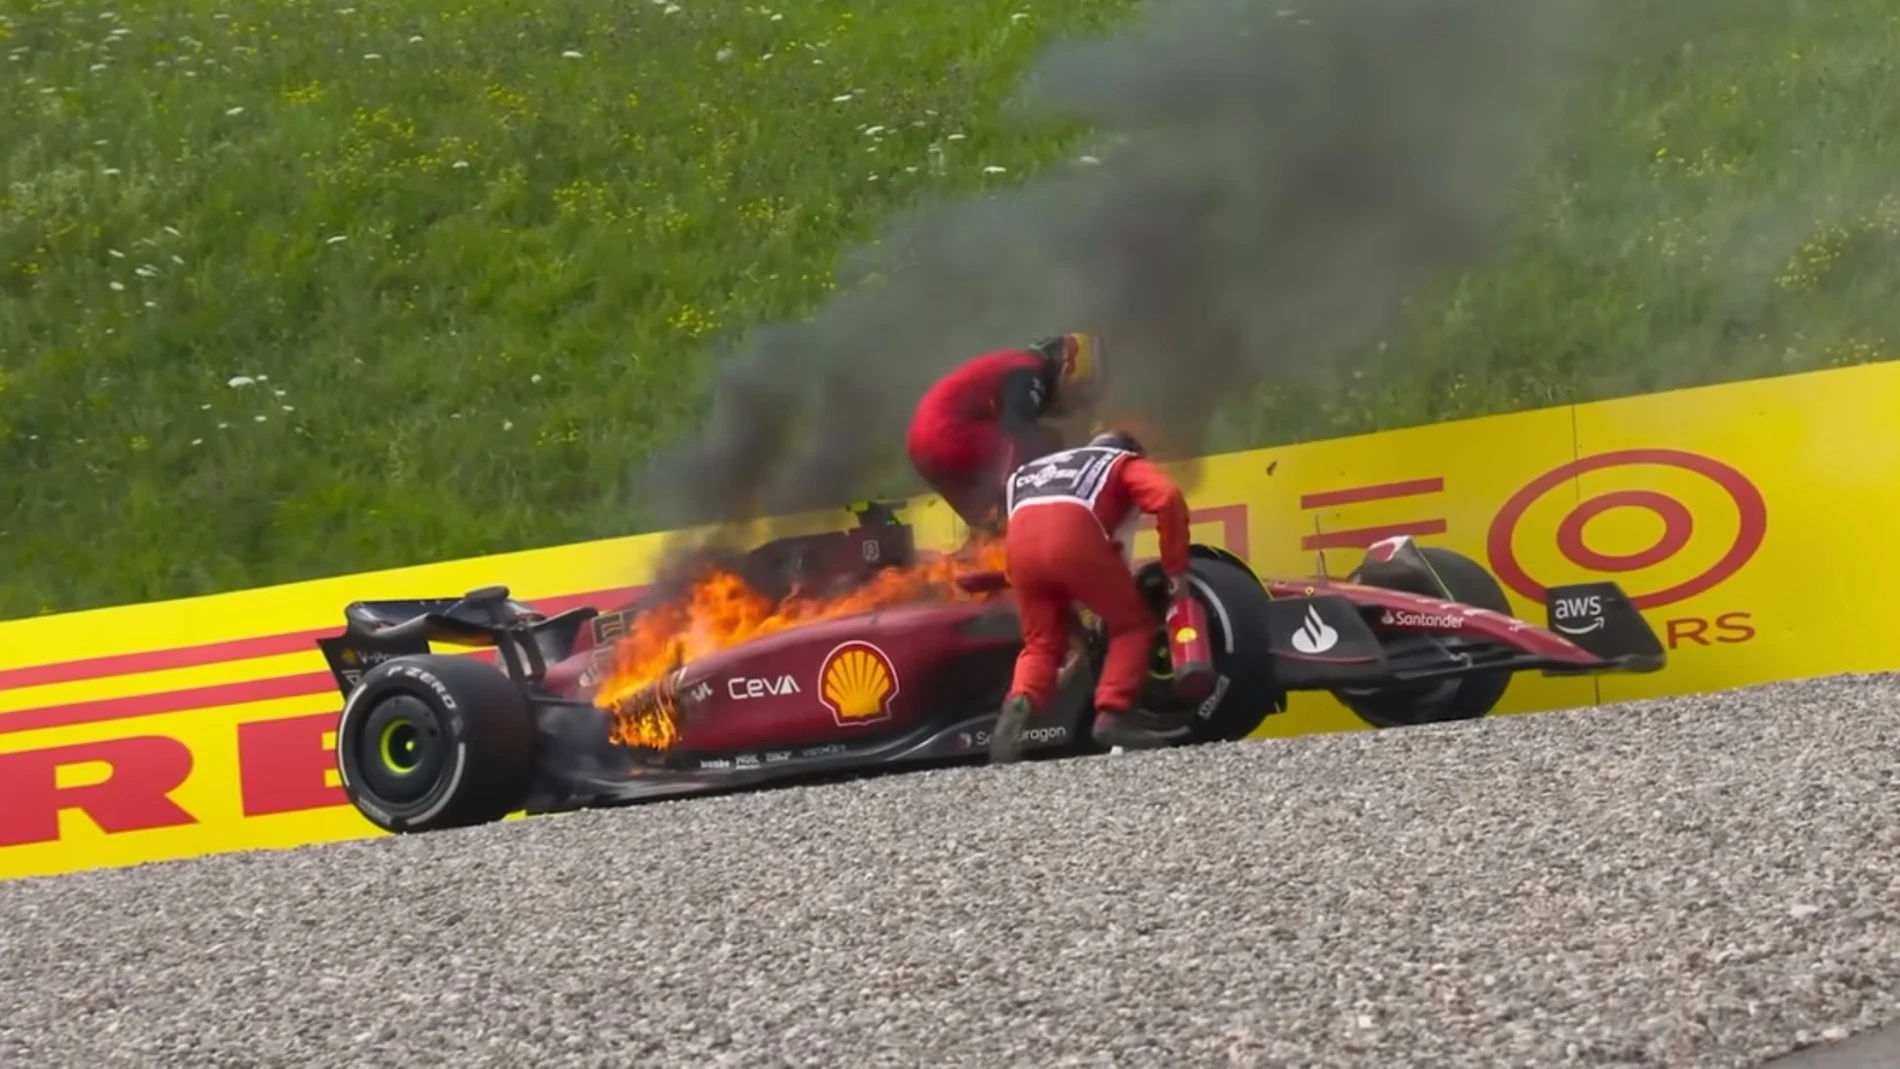 Carlos Sainz, saltando en marcha mientras su Ferrari arde